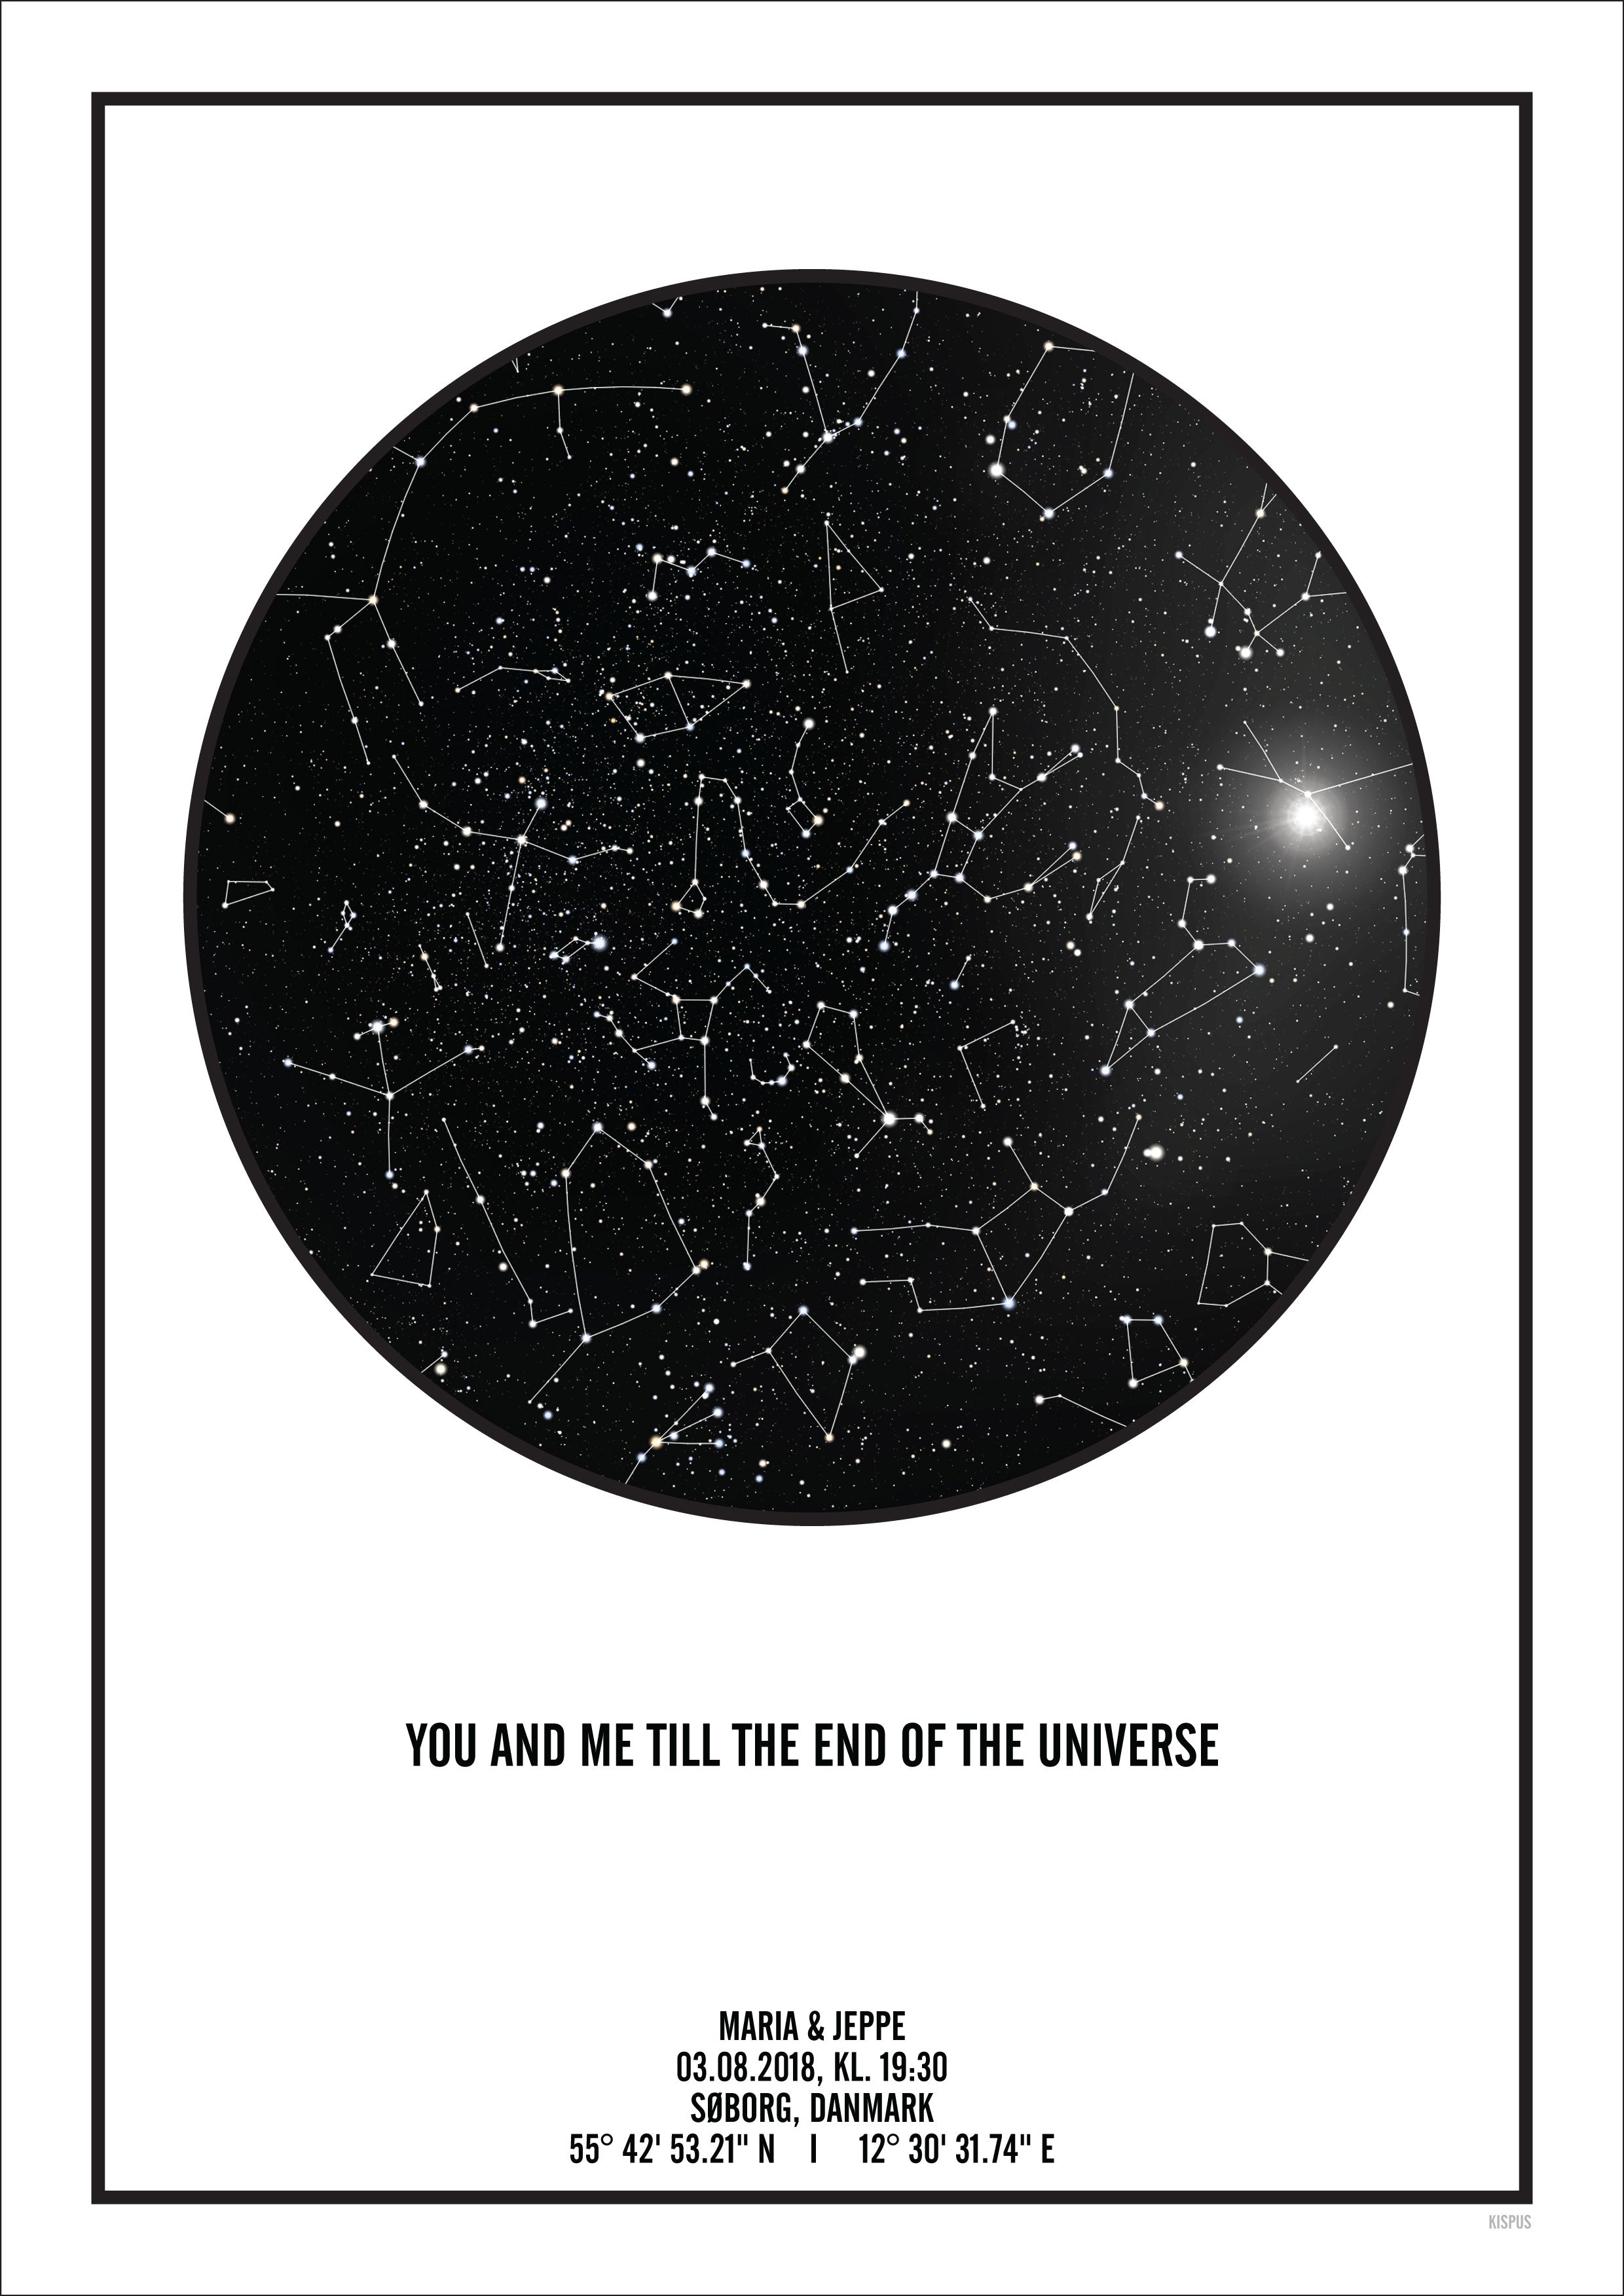 Se PERSONLIG STJERNEHIMMEL PLAKAT (HVID) - A4 / Stjernehimmel med stjernebilleder hos KISPUS